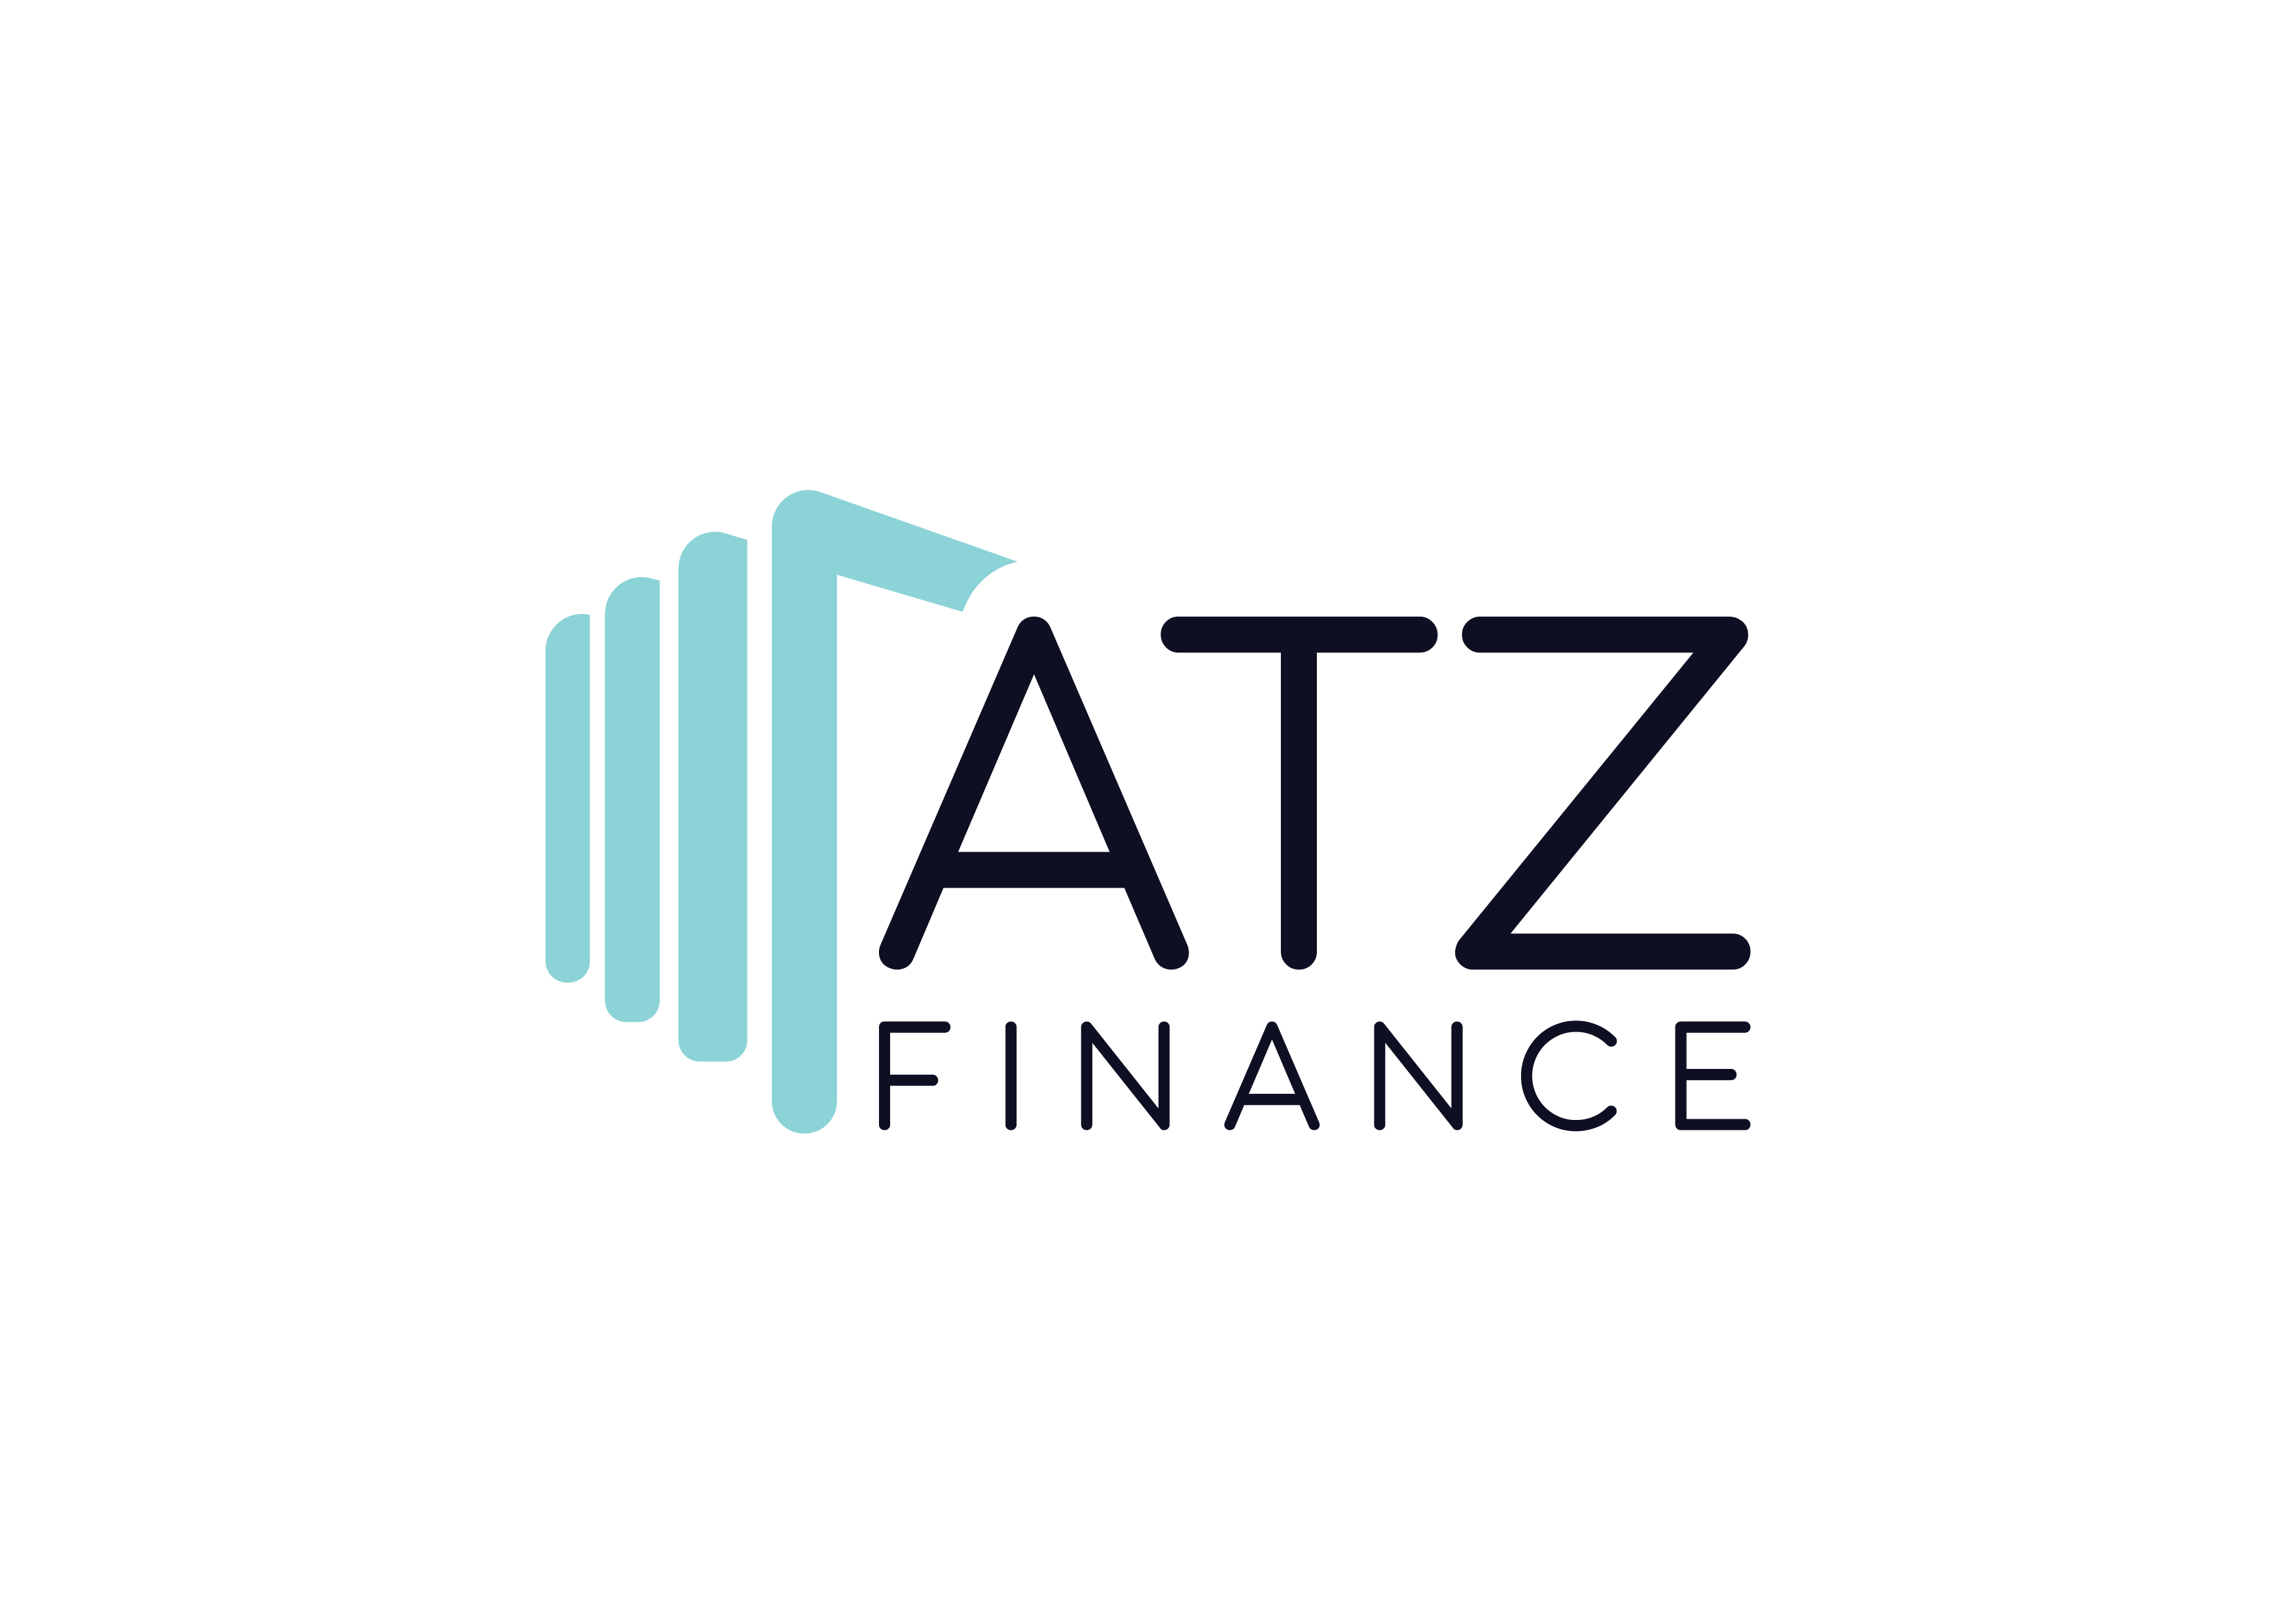 ATZ Finance